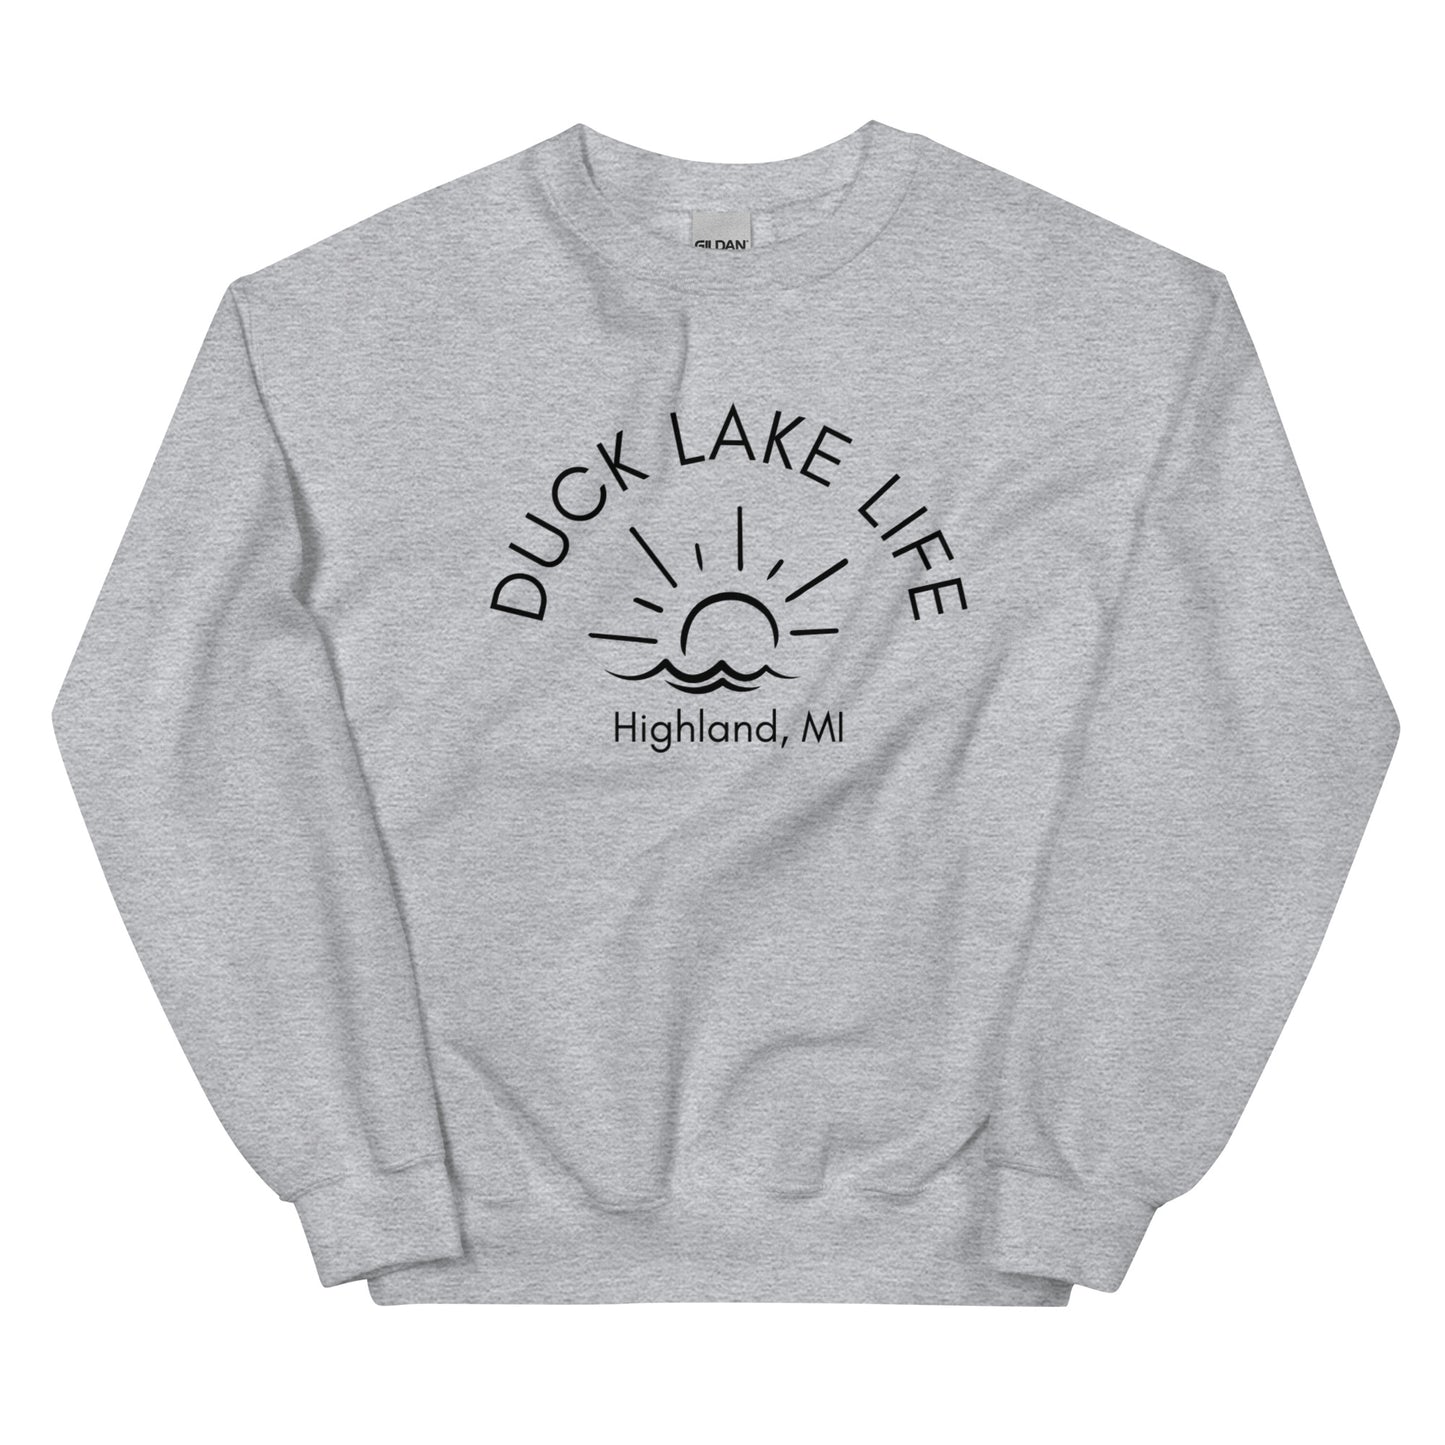 Duck Lake Unisex Sweatshirt